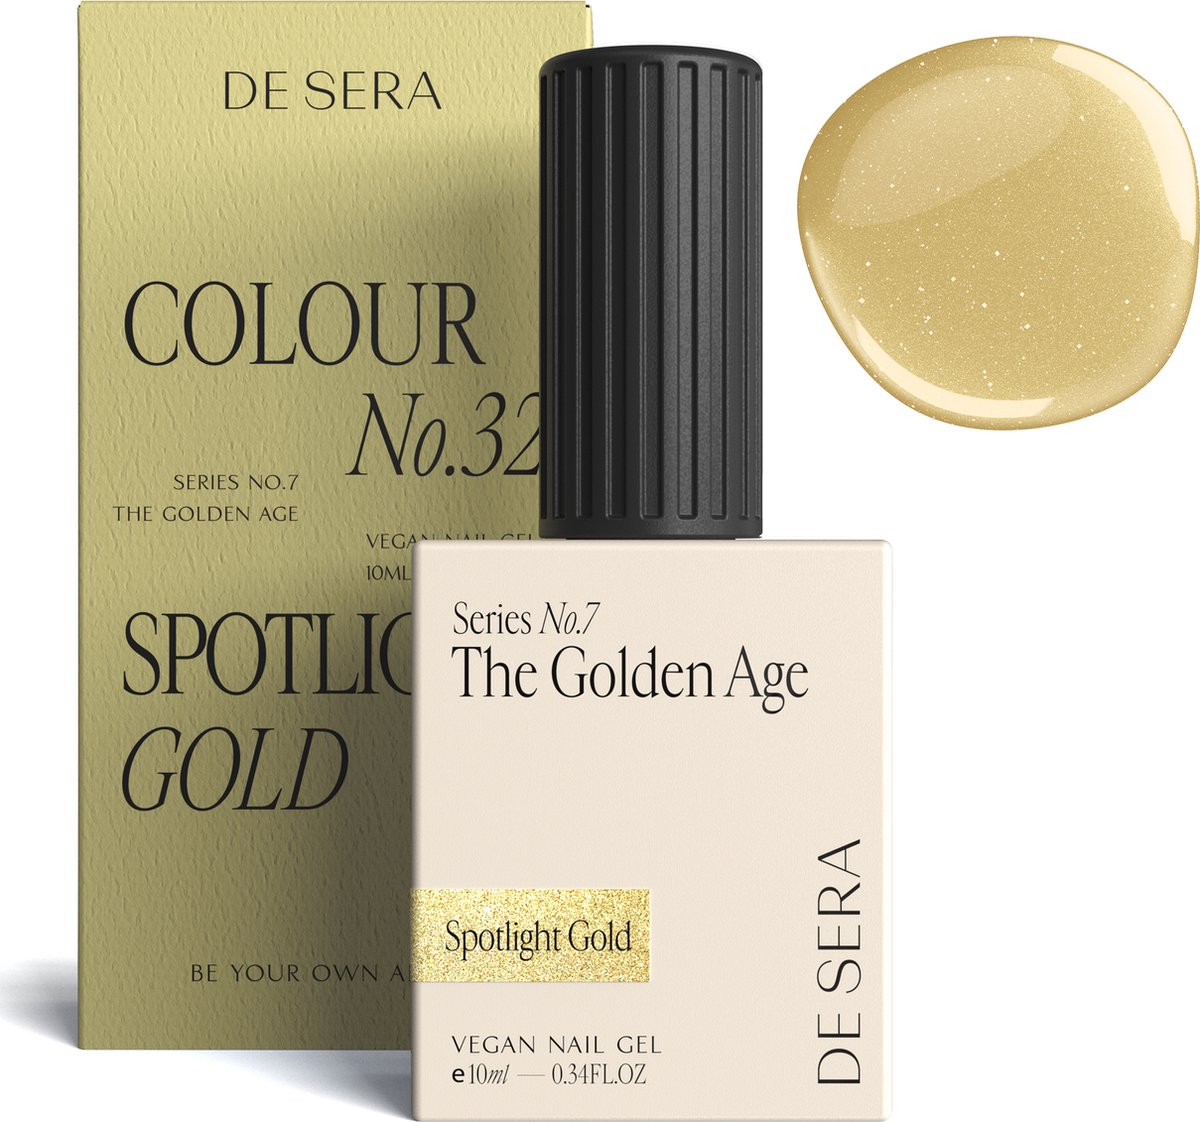 De Sera Gellak - Goude Gel Nagellak - Goud - 10ML - Colour No. 32 Spotlight Gold